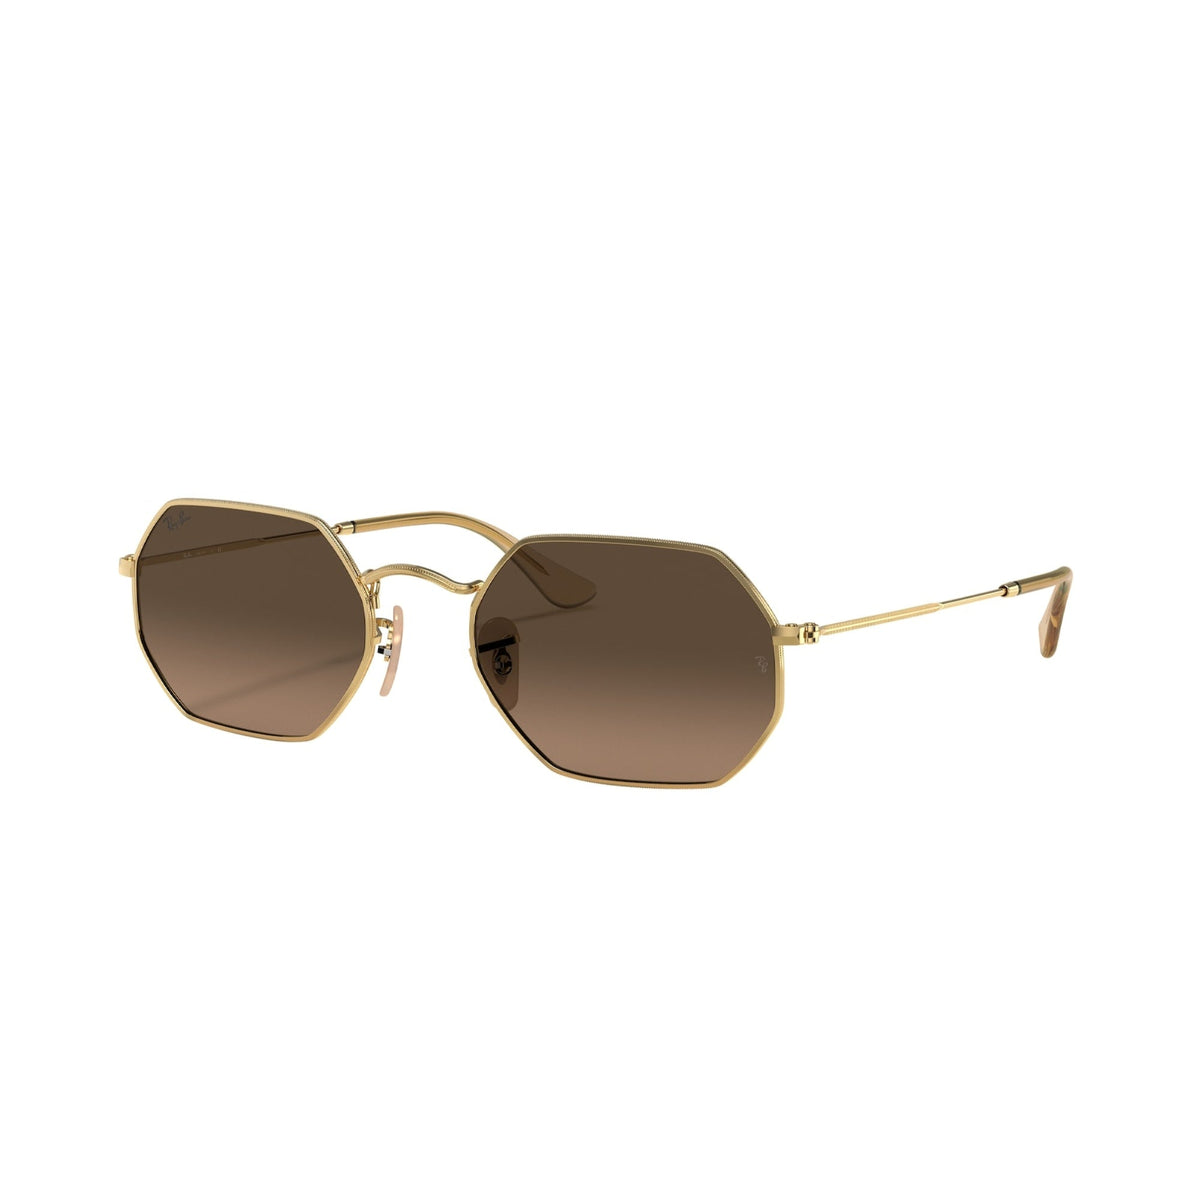 Ray-Ban Unisex Sunglasses  Gold Brown Gradient Grey Metal Metal  0RB3556N 912443 53